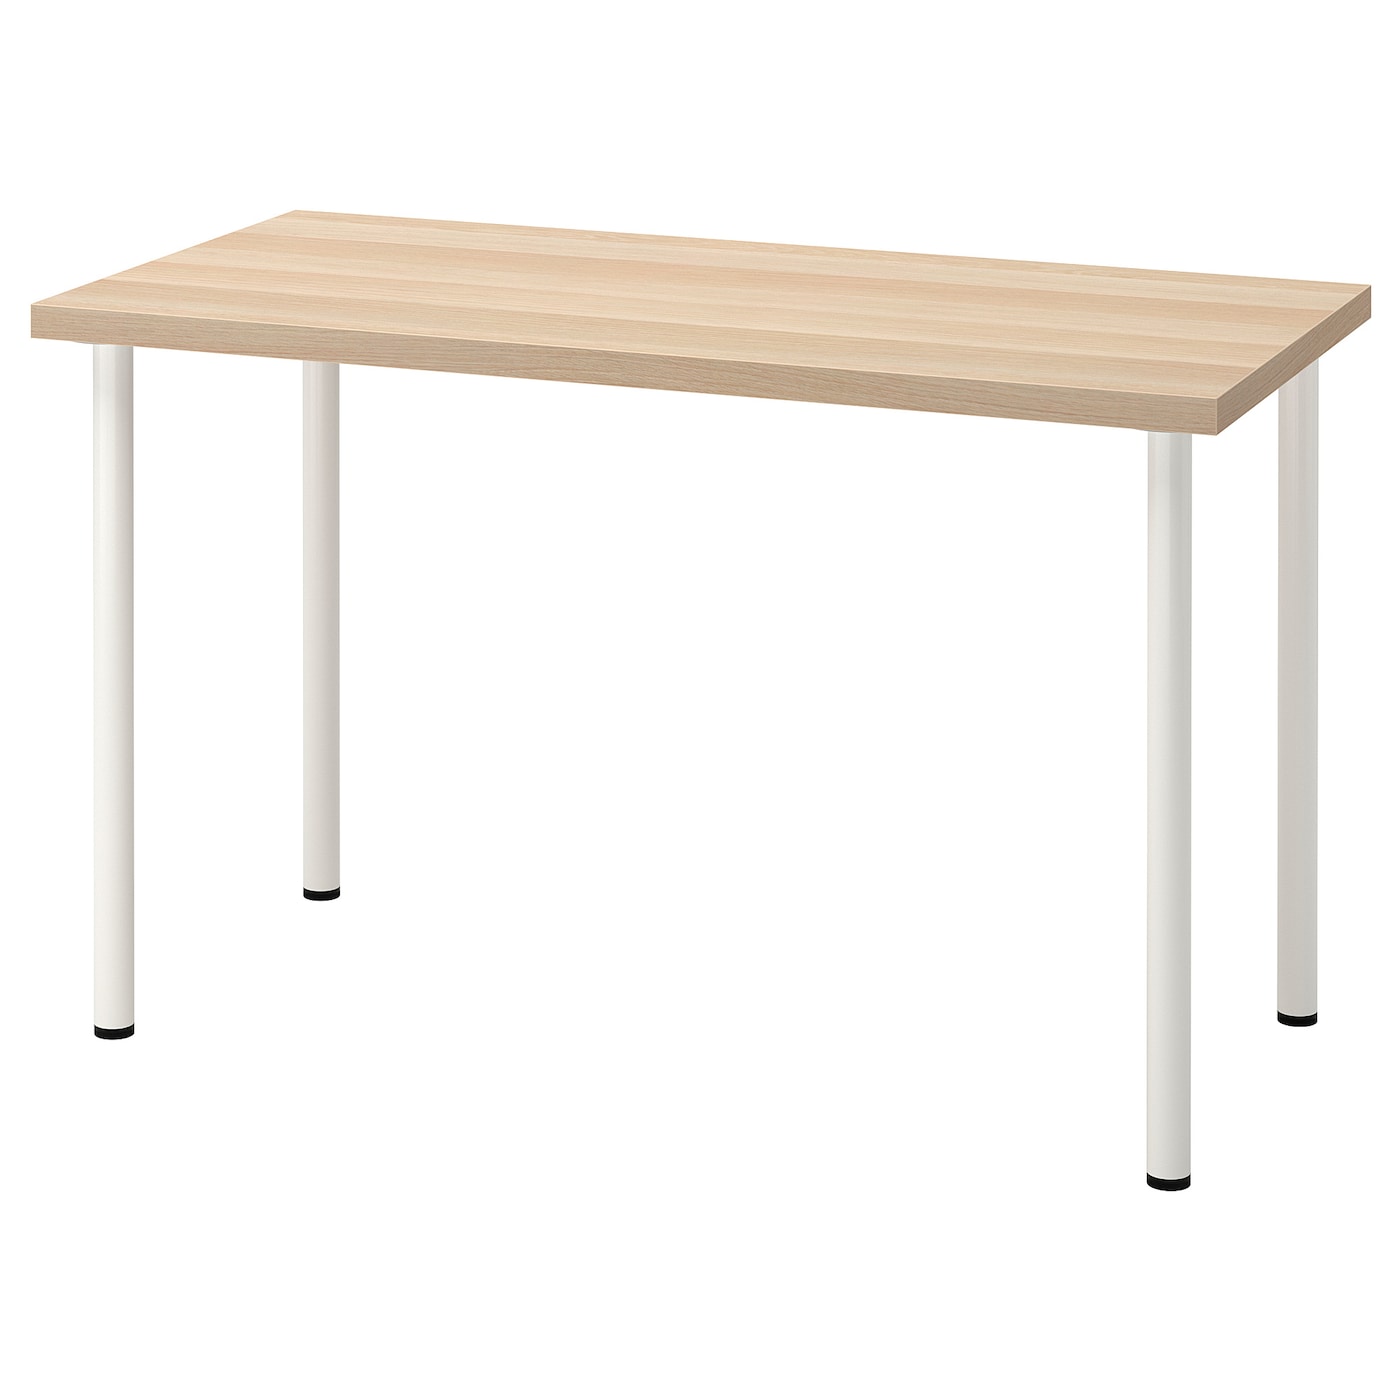 Письменный стол - IKEA LAGKAPTEN/ADILS, 120х60 см, под беленый дуб/белый, ЛАГКАПТЕН/АДИЛЬС ИКЕА